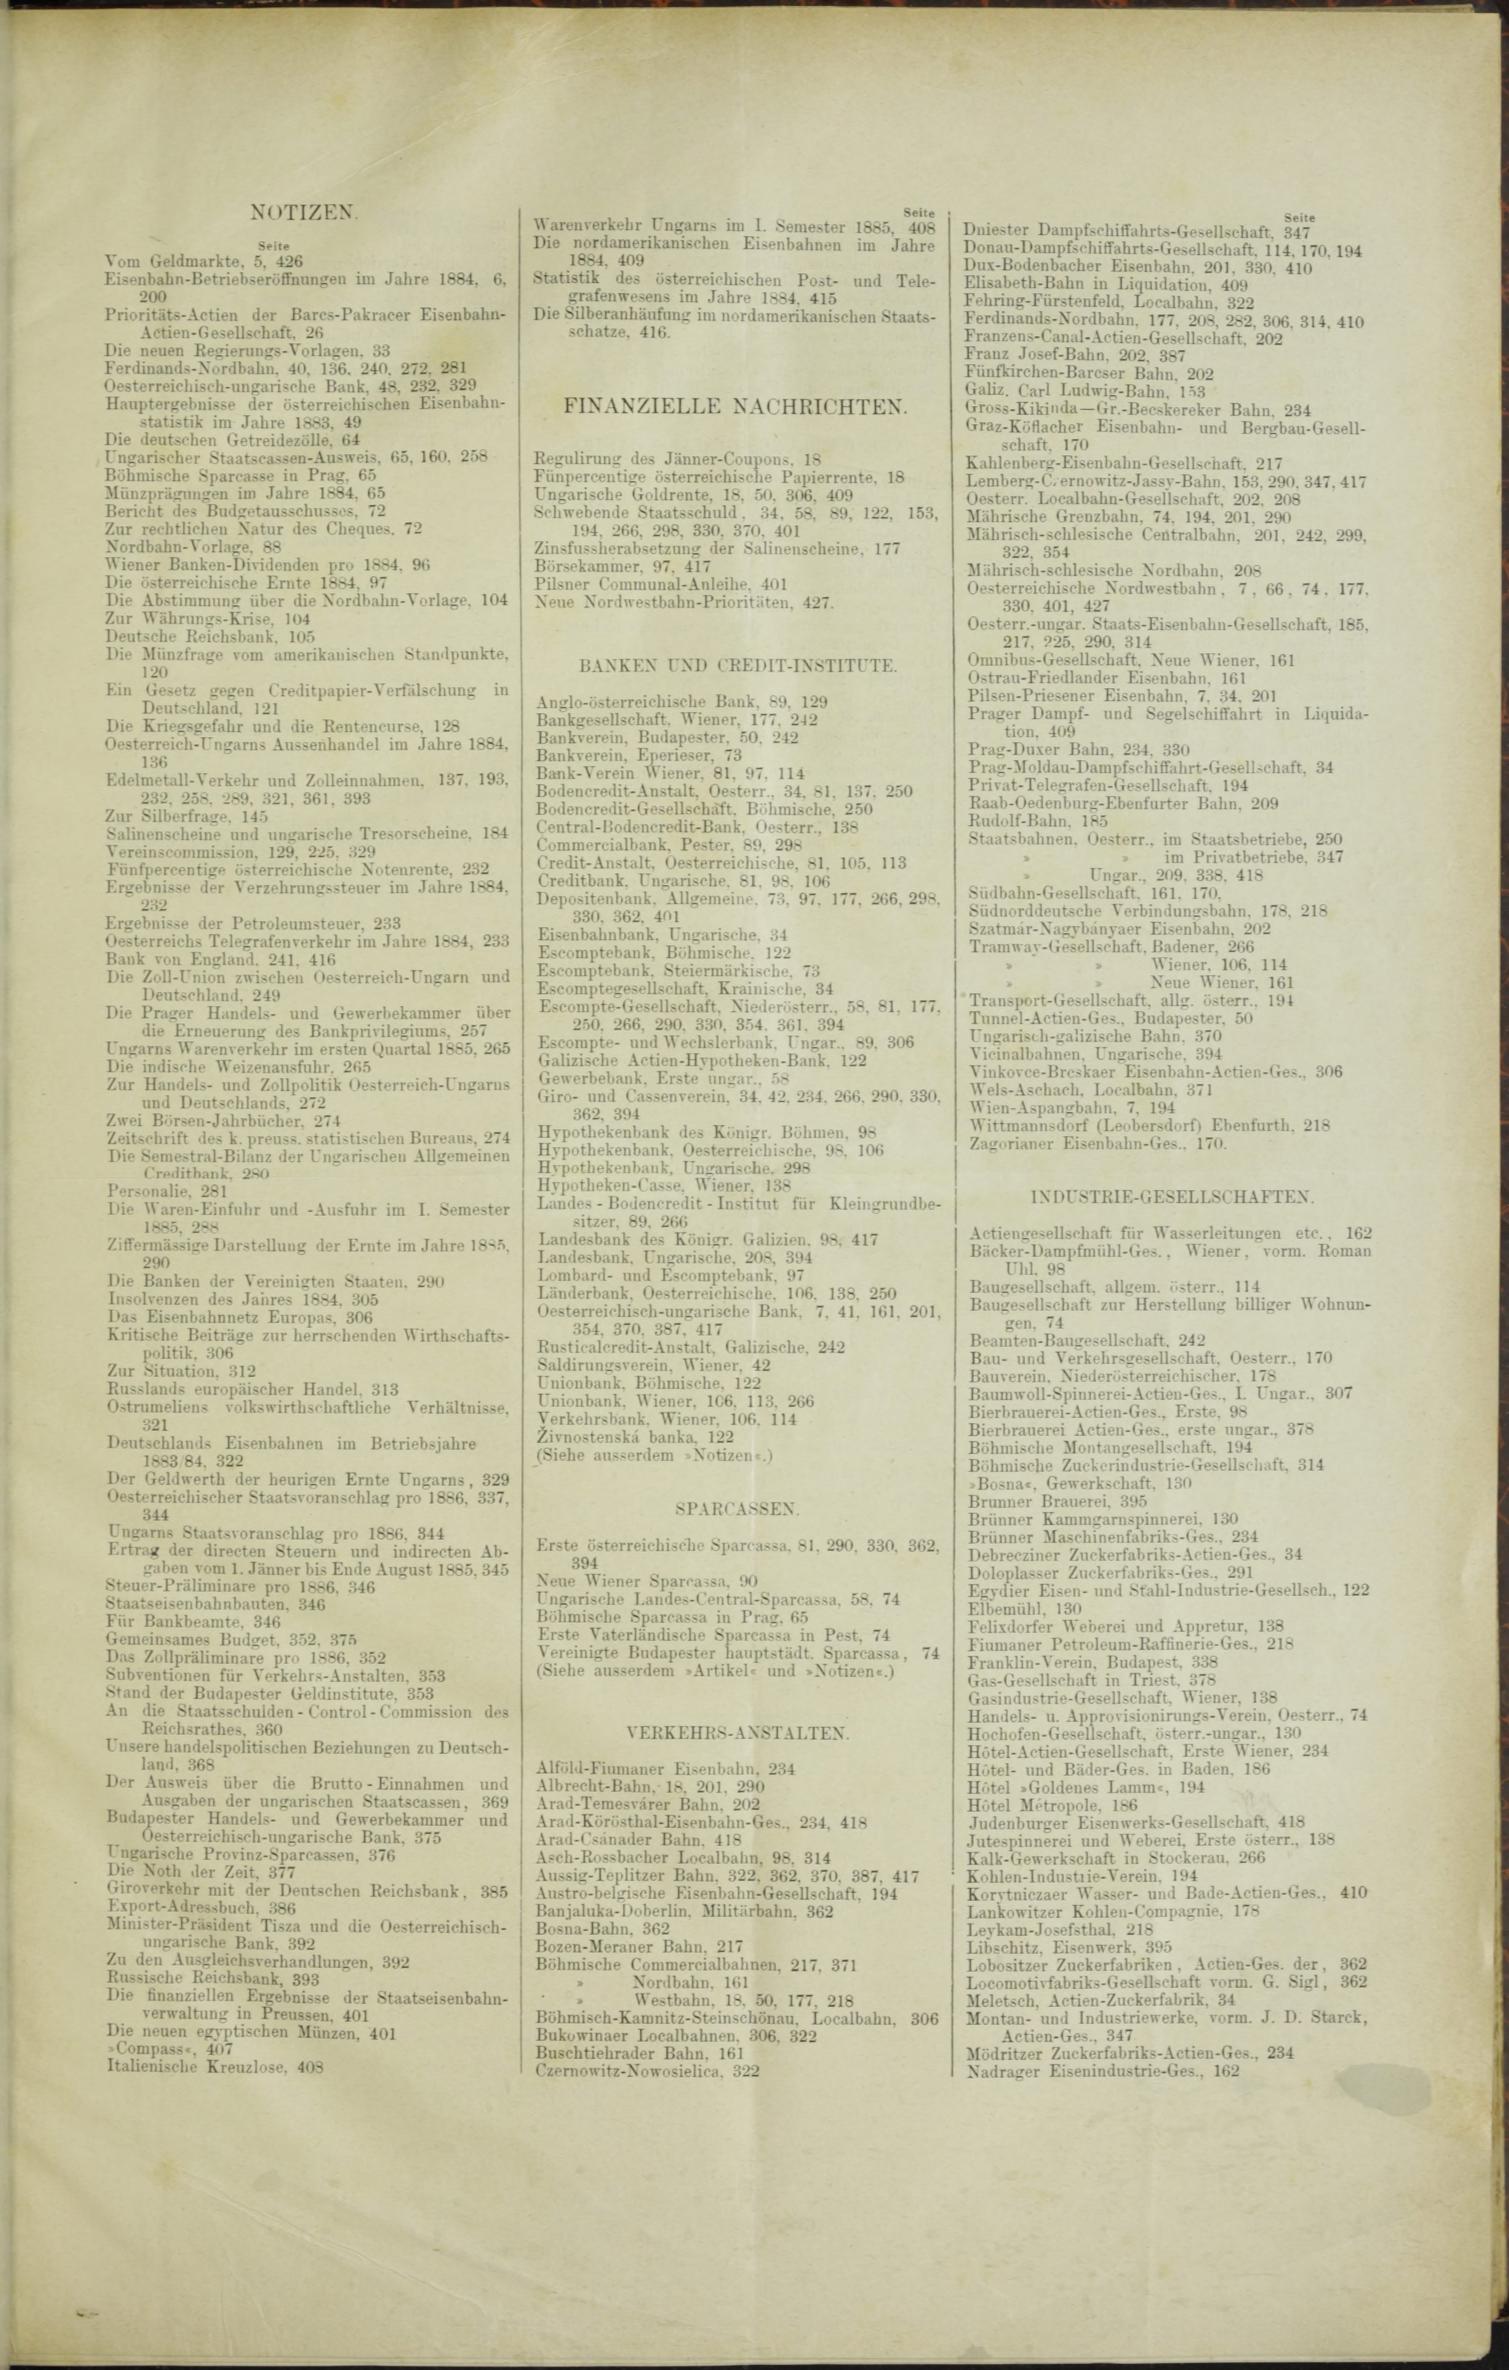 Der Tresor 01.01.1885 - Seite 11